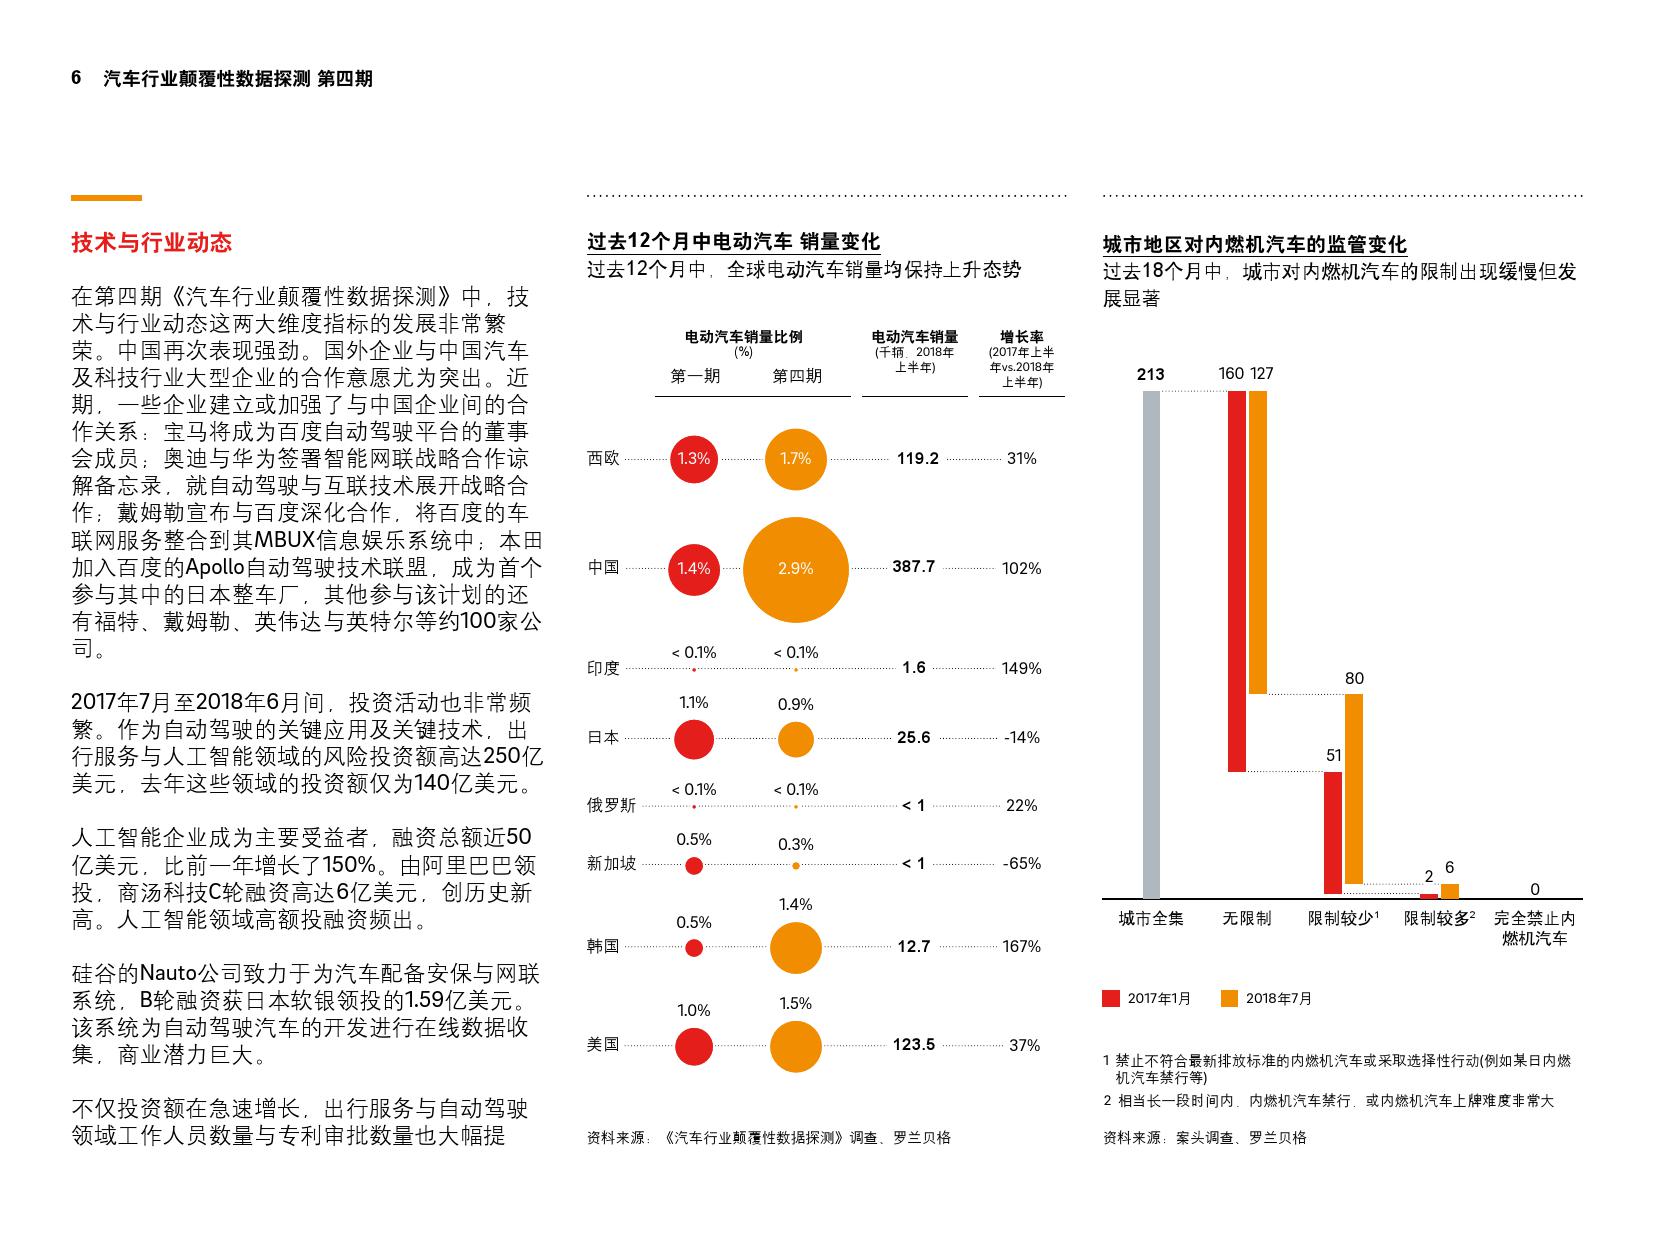 罗兰·贝格发布汽车行业数据报告 中国名列前茅